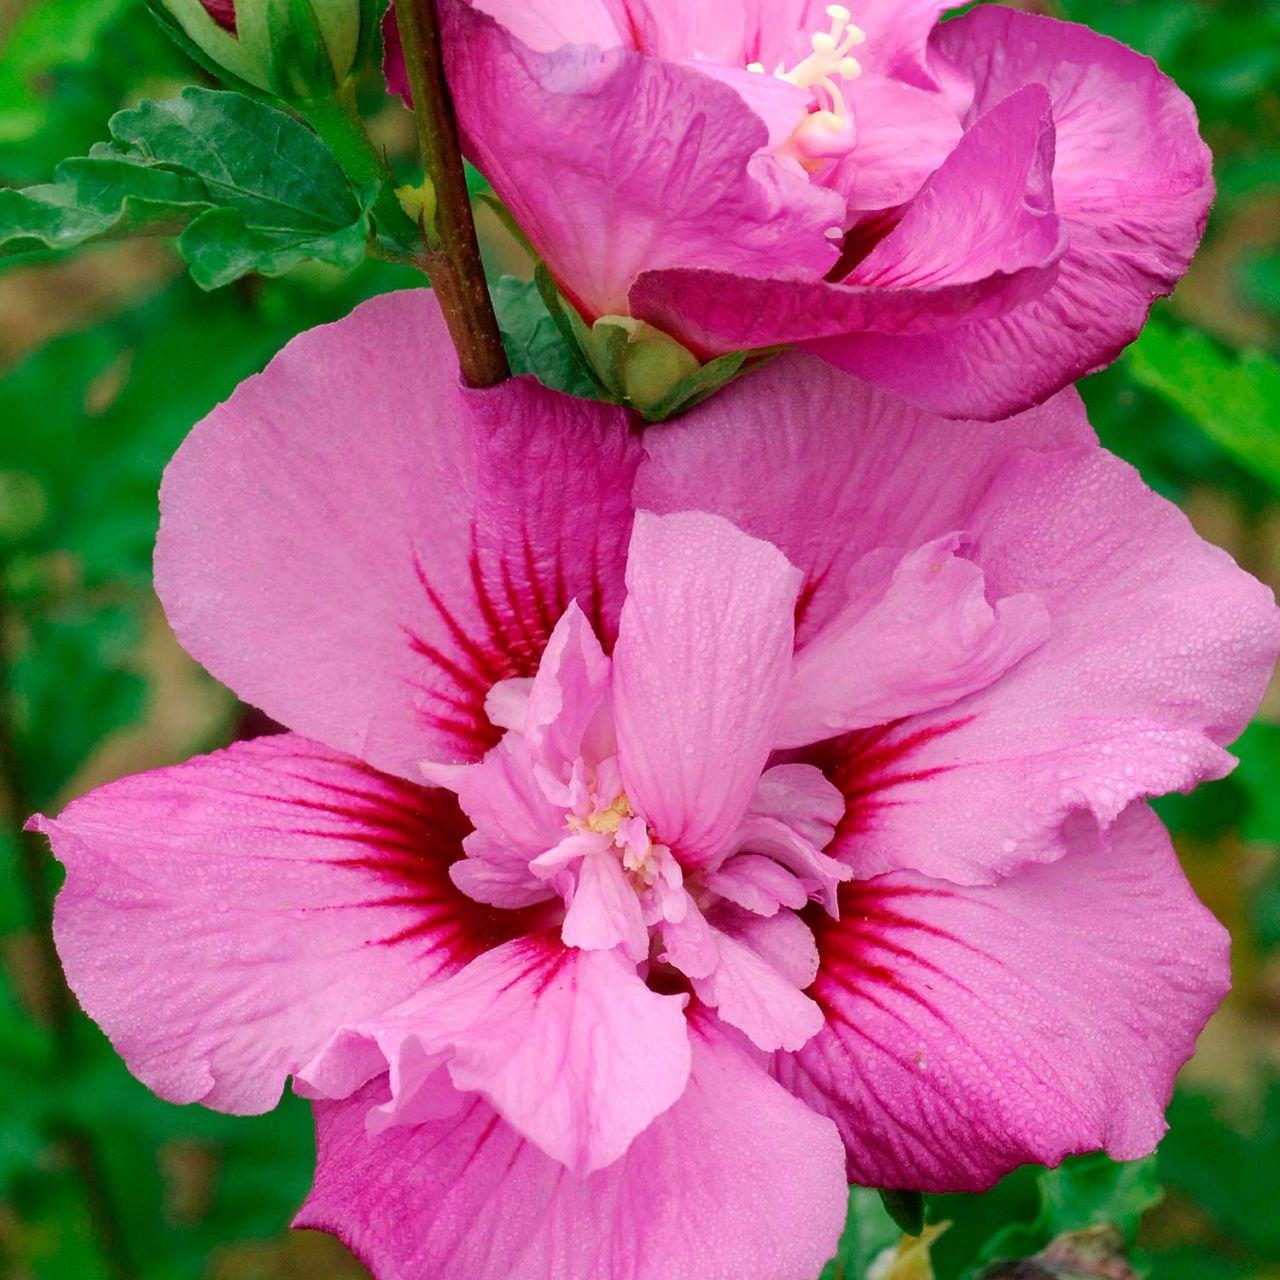 Kategorie <b>Blütensträucher und Ziergehölze </b> - Garteneibisch 'Eruption' - Hibiscus syriacus 'Eruption'